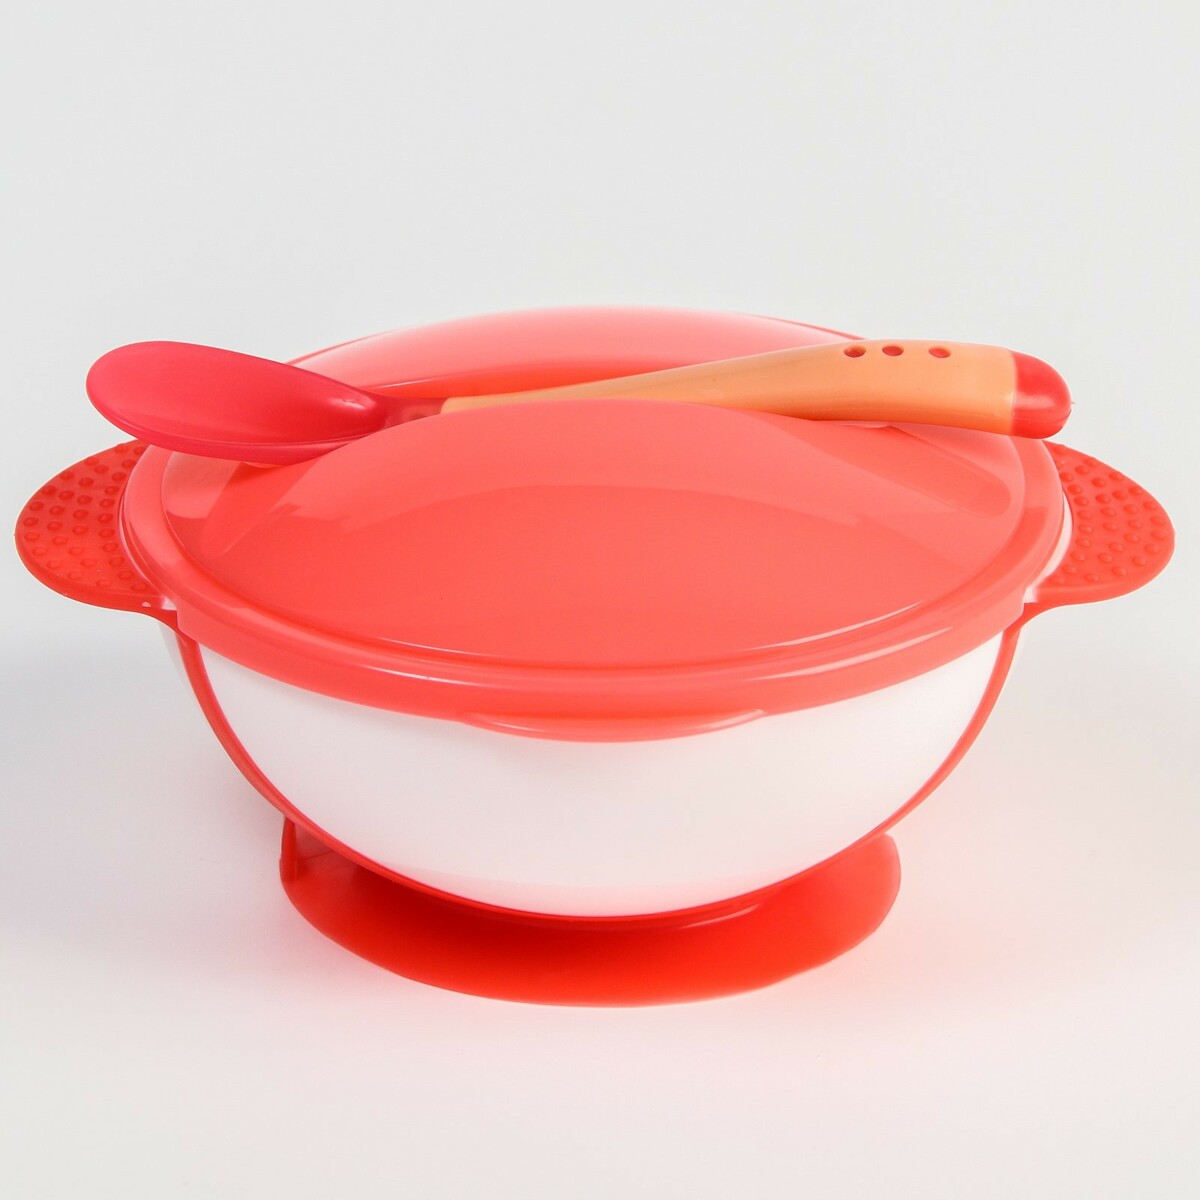 Набор детской посуды: миска на присоске 340мл., с крышкой, термоложка, цвет розовый набор детской посуды миска на присоске 340мл с крышкой термоложка розовый